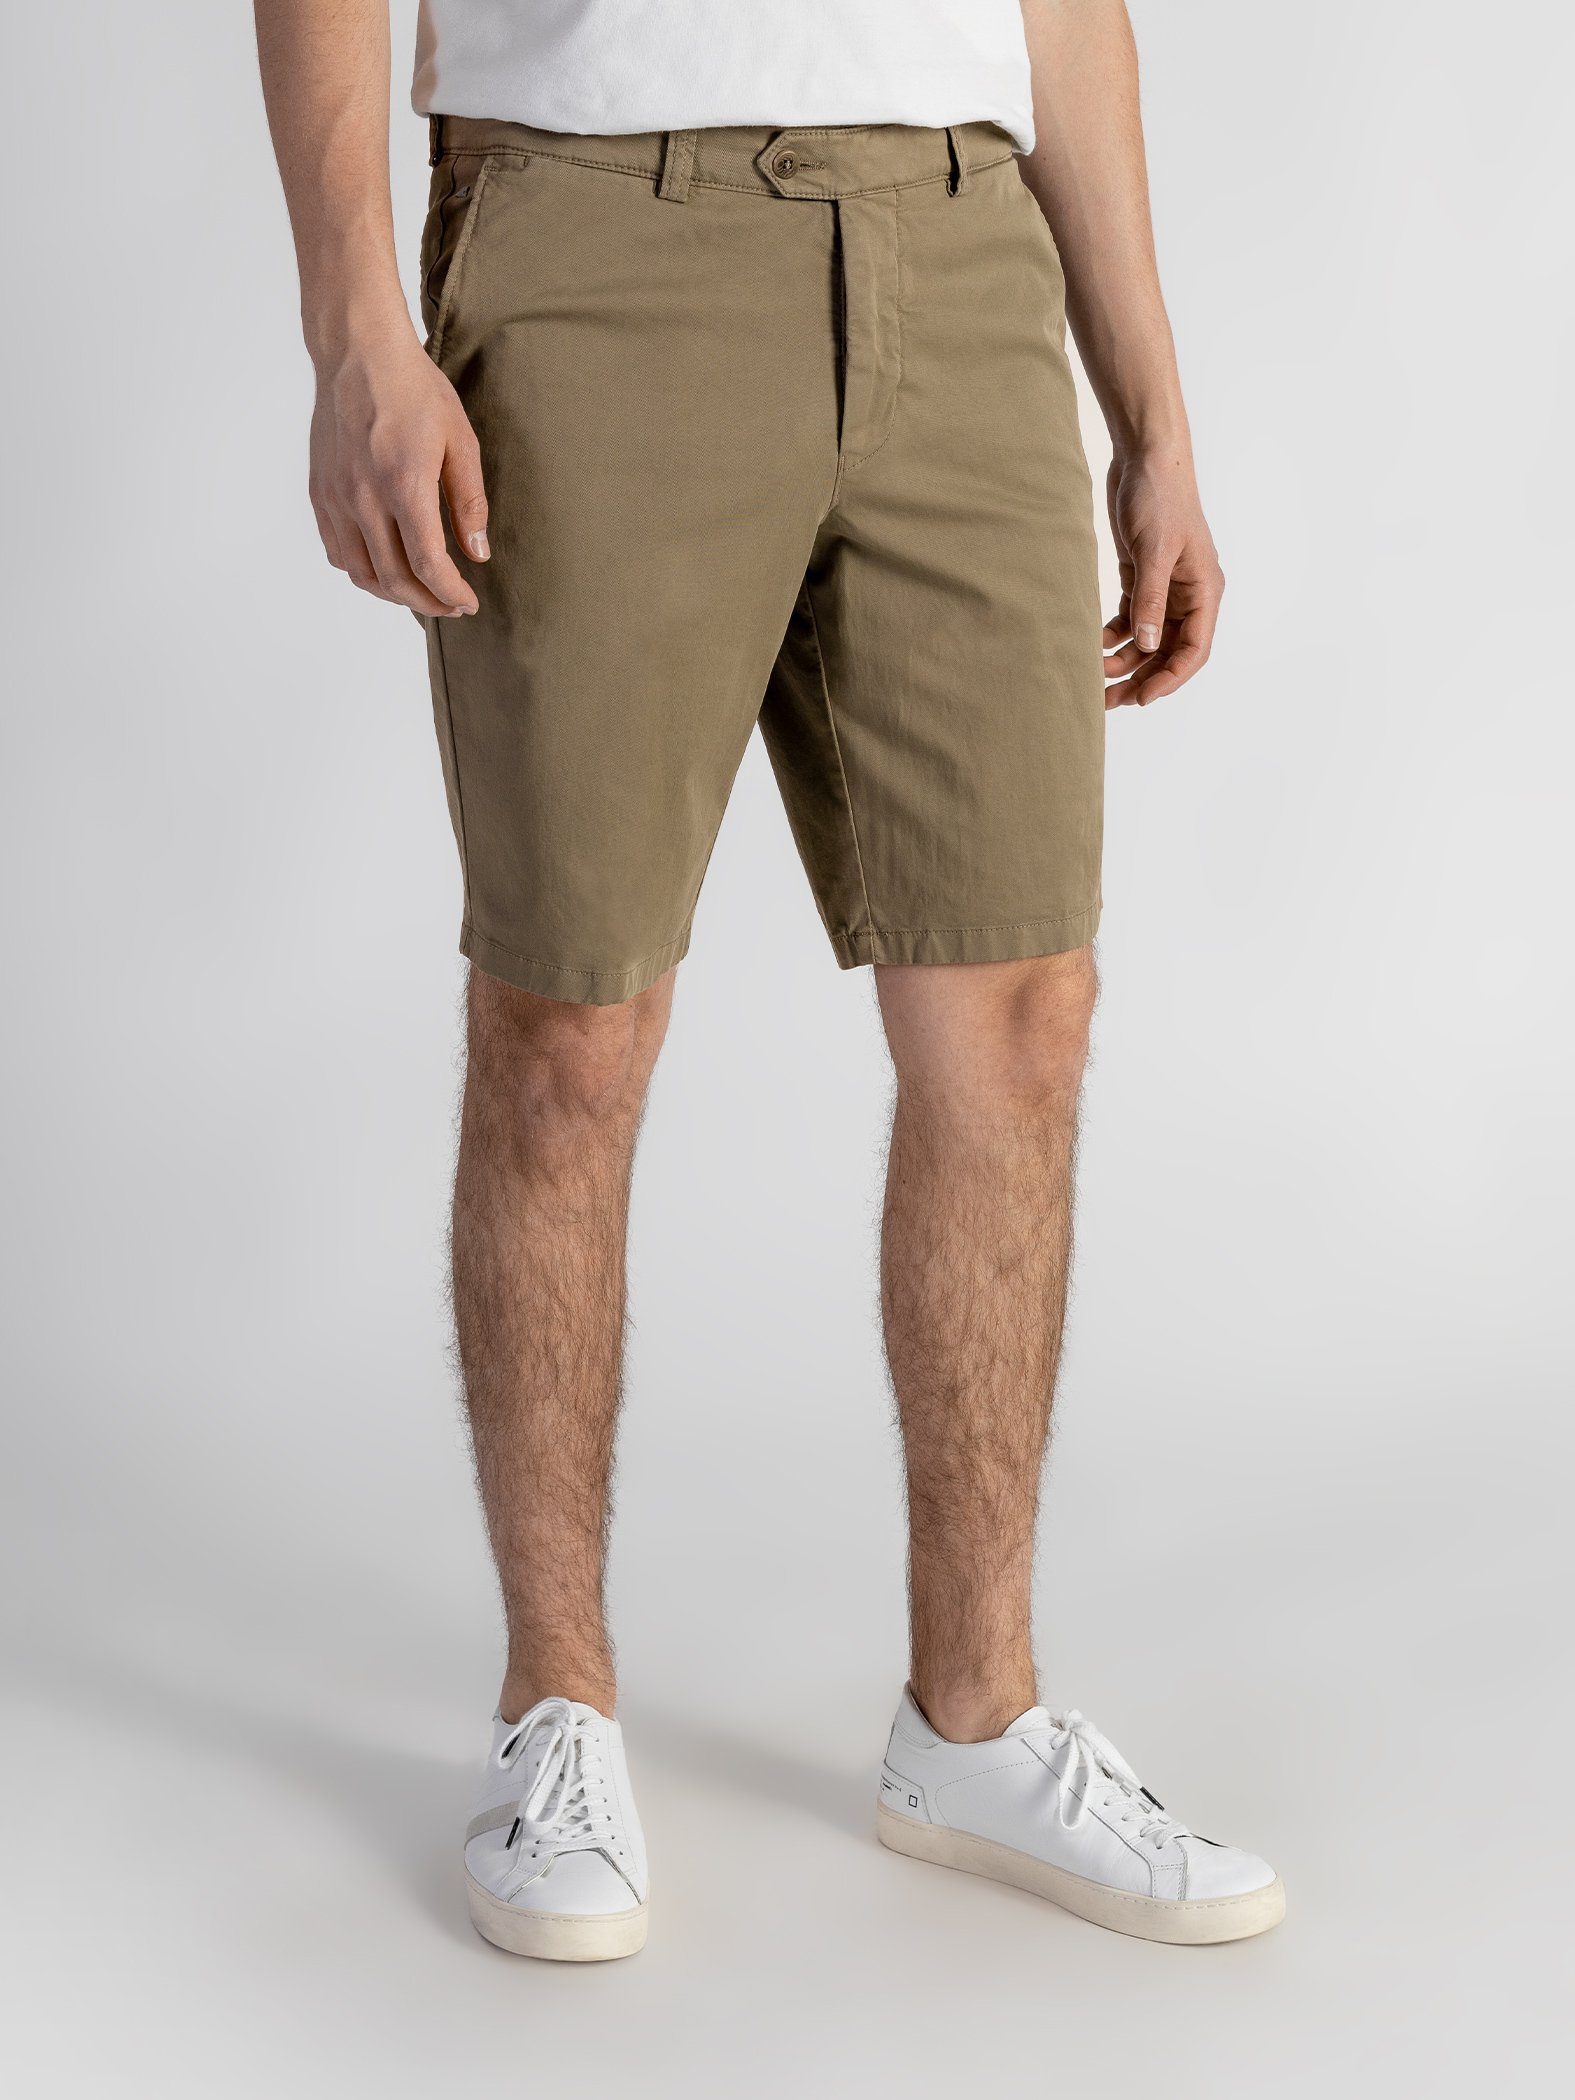 Farbauswahl, Shorts Beige TwoMates Bund, elastischem GOTS-zertifiziert mit Shorts